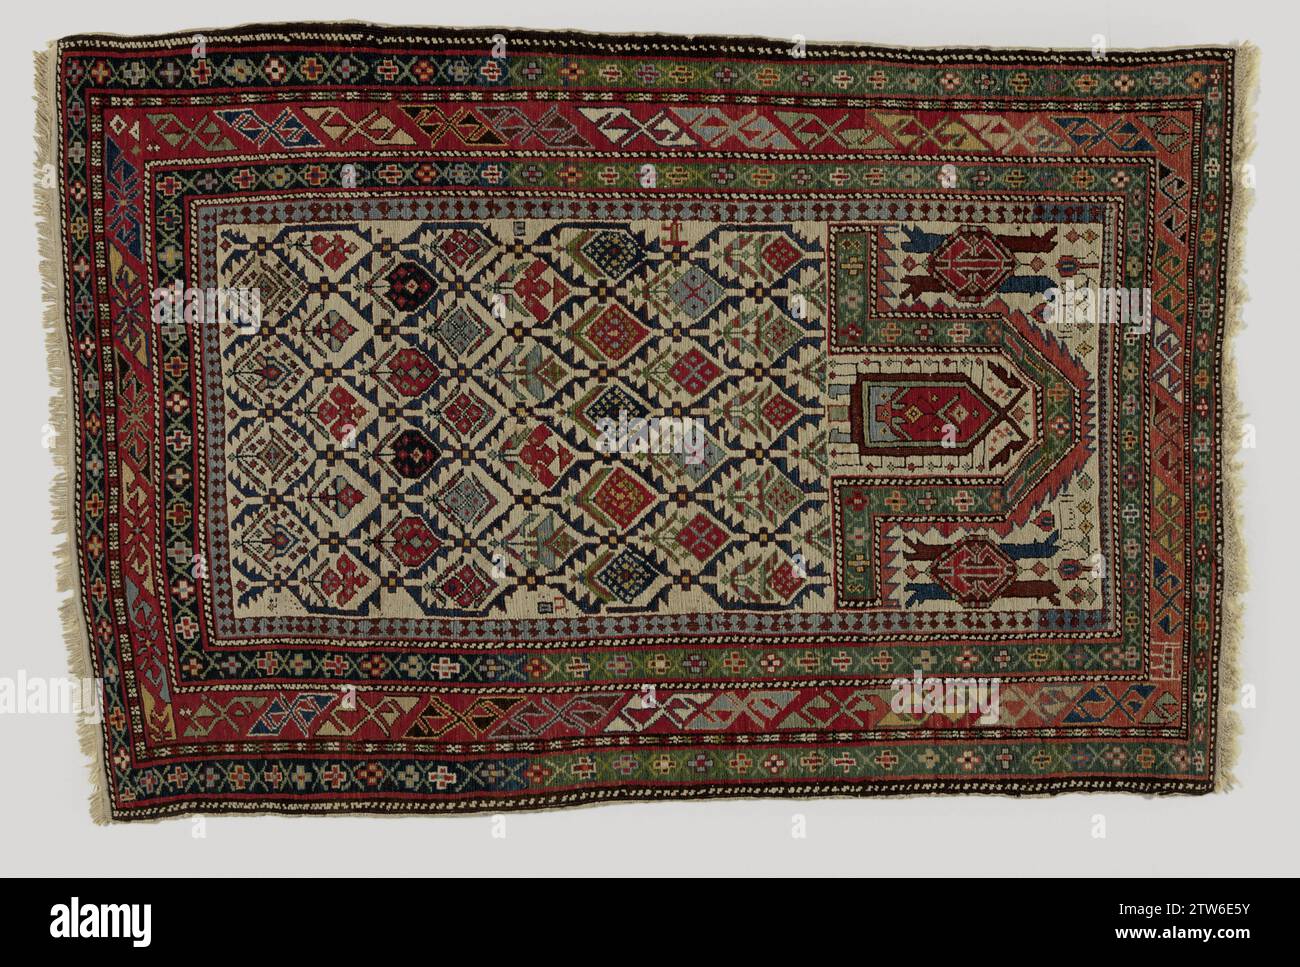 Bidkleed, anonyme, c. 1875 - c. 1900 tapis oriental, tapis de prière. Au milieu du terrain un mihrab avec une grille bleue et des fleurs. Dans le haut du Mihrab un ornement en forme d'amulette sous la forme d'un double boteh. Bord à quatre temps, dont le plus large est décoré avec des motifs en S inclinés. Shirvan (éventuellement) ketting : laine. Inslag : tapis oriental en coton (textile), tapis de prière. Au milieu du terrain un mihrab avec une grille bleue et des fleurs. Dans le haut du Mihrab un ornement en forme d'amulette sous la forme d'un double boteh. Bord à quatre temps, dont le plus large est décoré avec des motifs en S inclinés. Shirvan (éventuellement) ketting : laine Banque D'Images